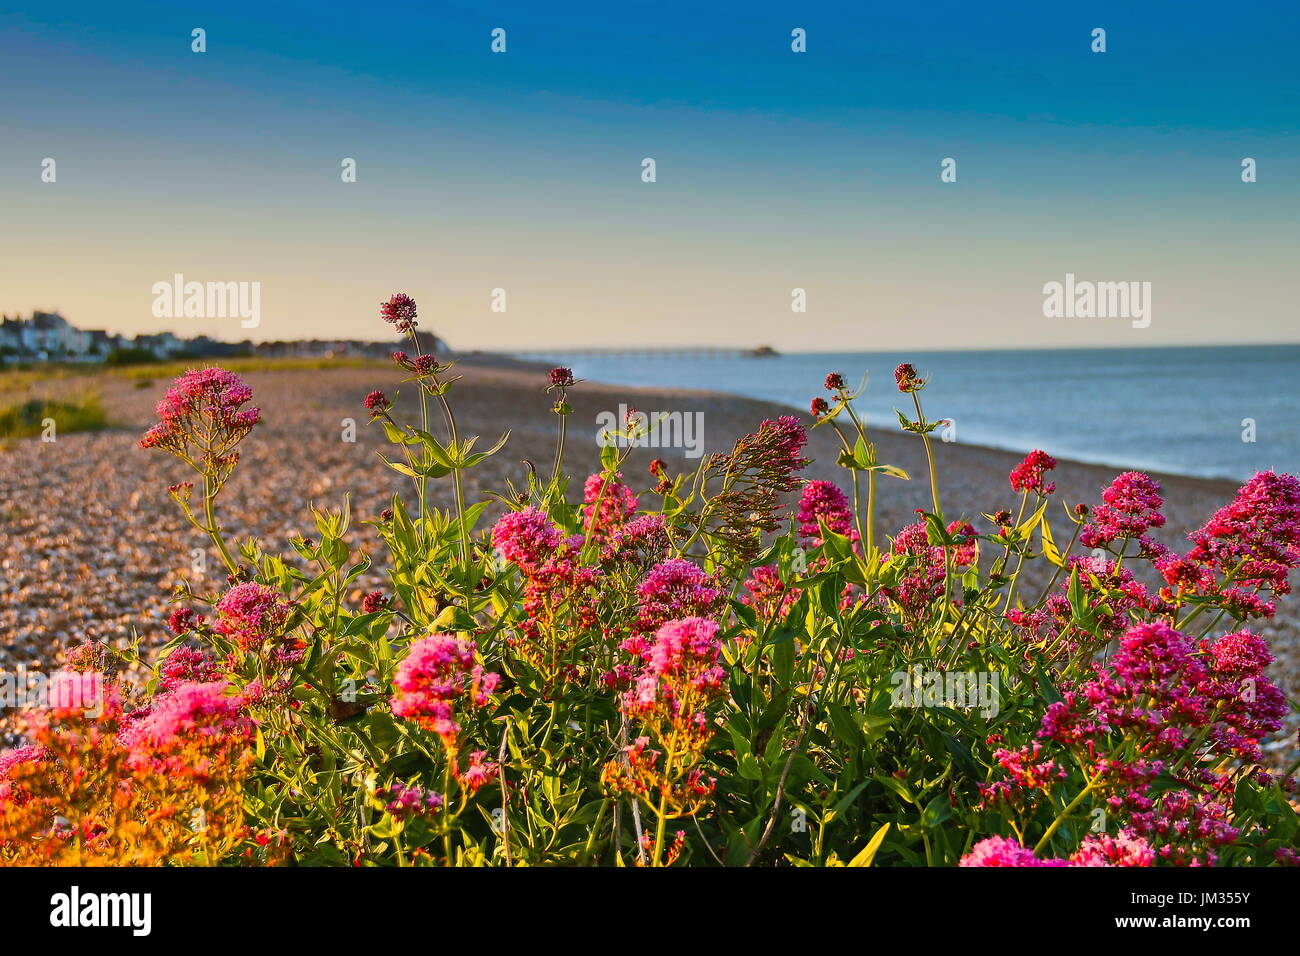 Fiori da spiaggia immagini e fotografie stock ad alta risoluzione - Alamy